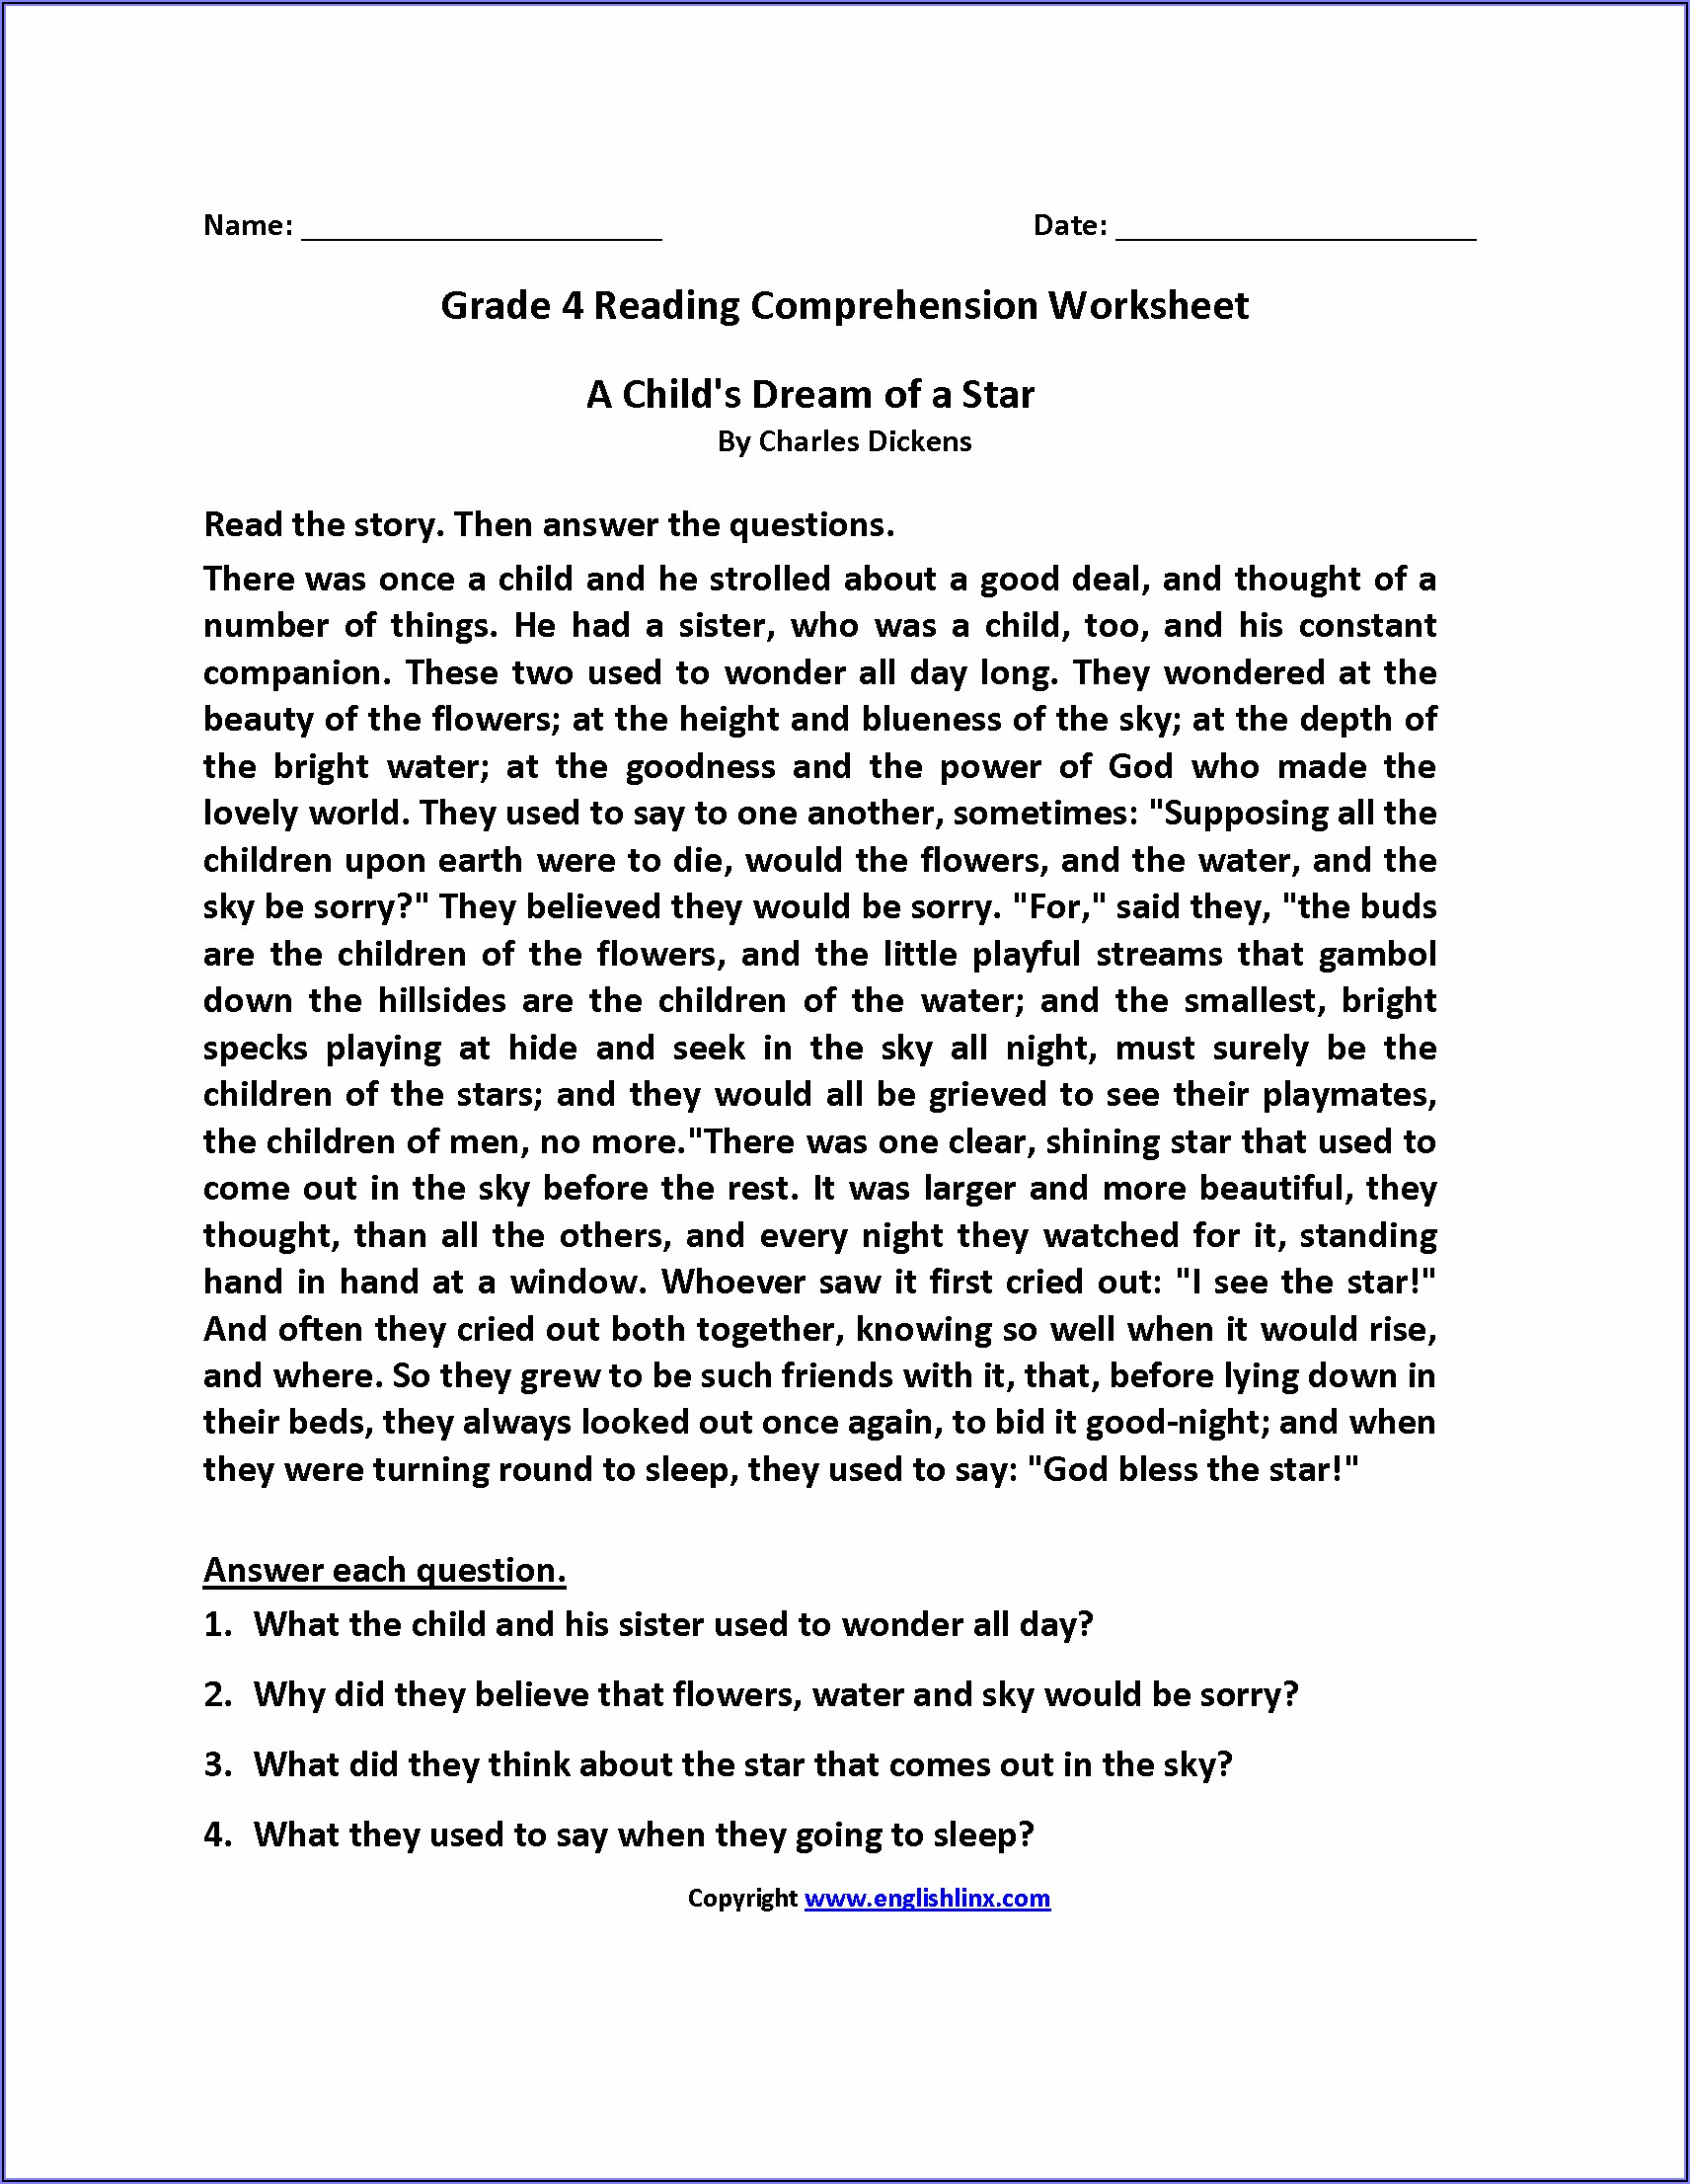 Reading Comprehension Worksheet For Grade 4 Pdf